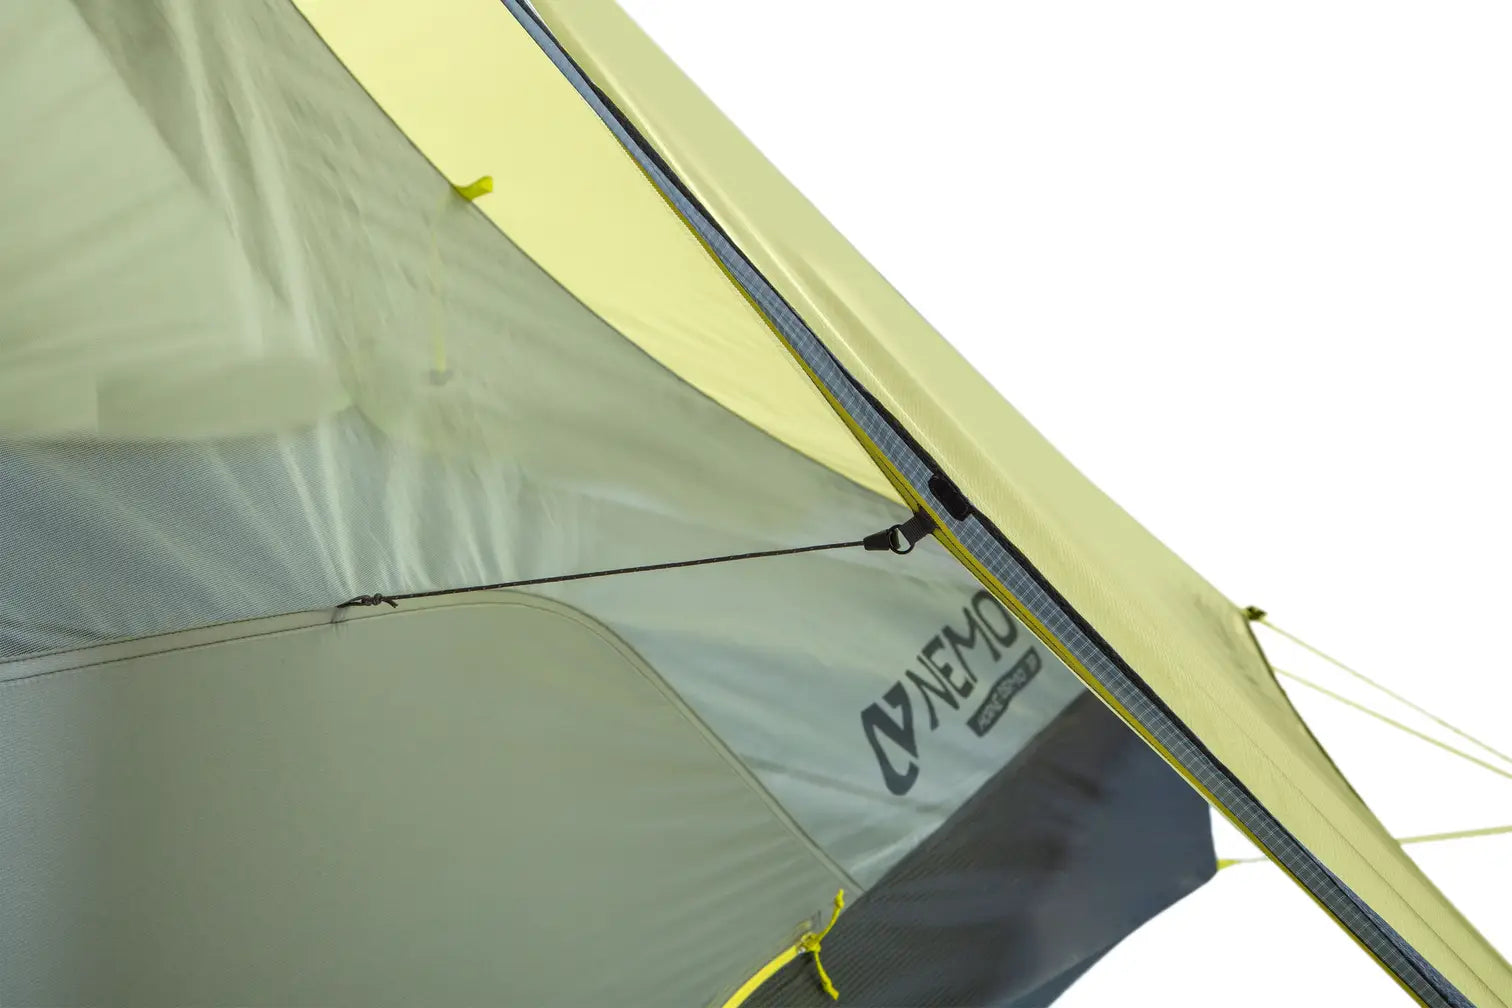 Nemo - Hornet OSMO 1P Ultralight Backpacking Tent